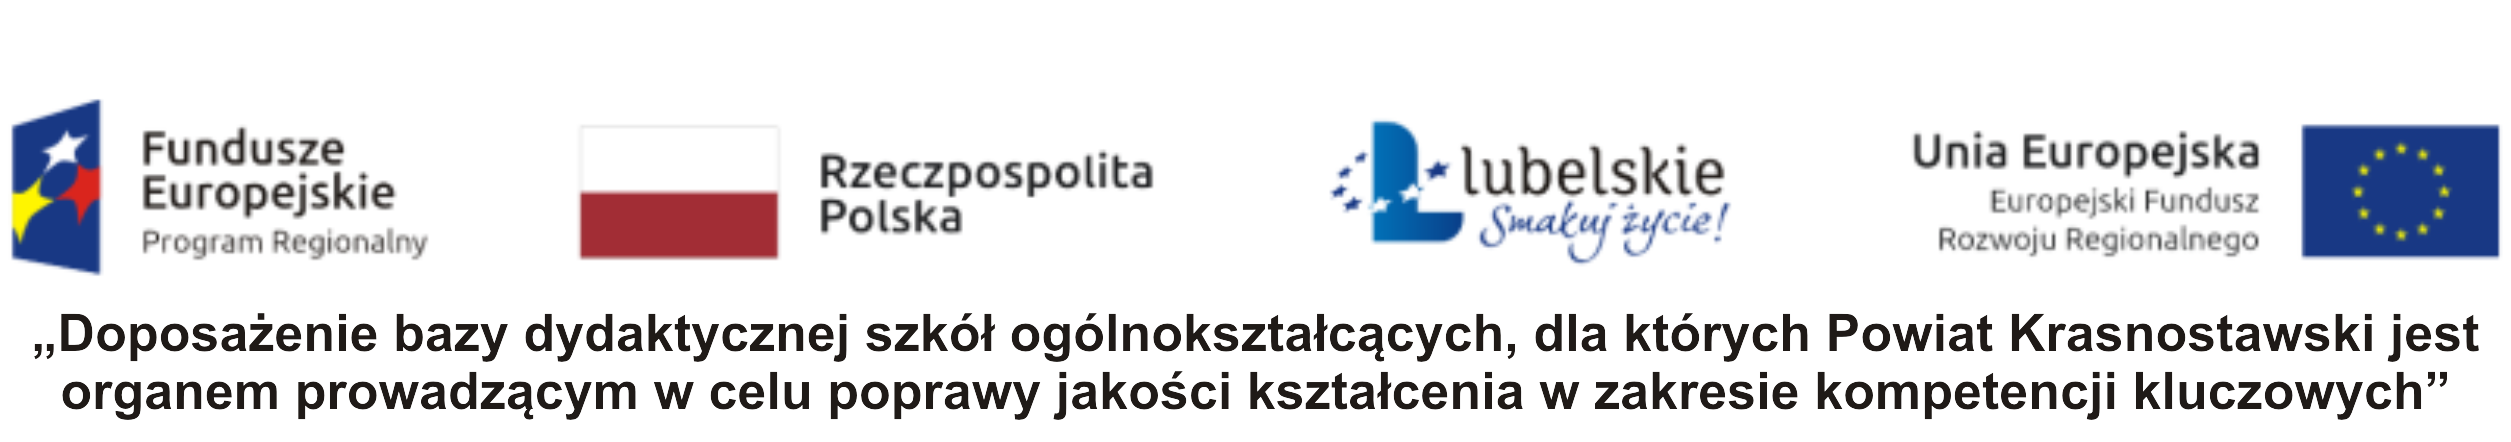 „Doposażenie bazy dydaktycznej szkół ogólnokształcących, dla których Powiat Krasnostawski jest organem prowadzącym w celu poprawy jakości kształcenia w zakresie kompetencji kluczowych” - kliknięcie spowoduje otwarcie nowego okna